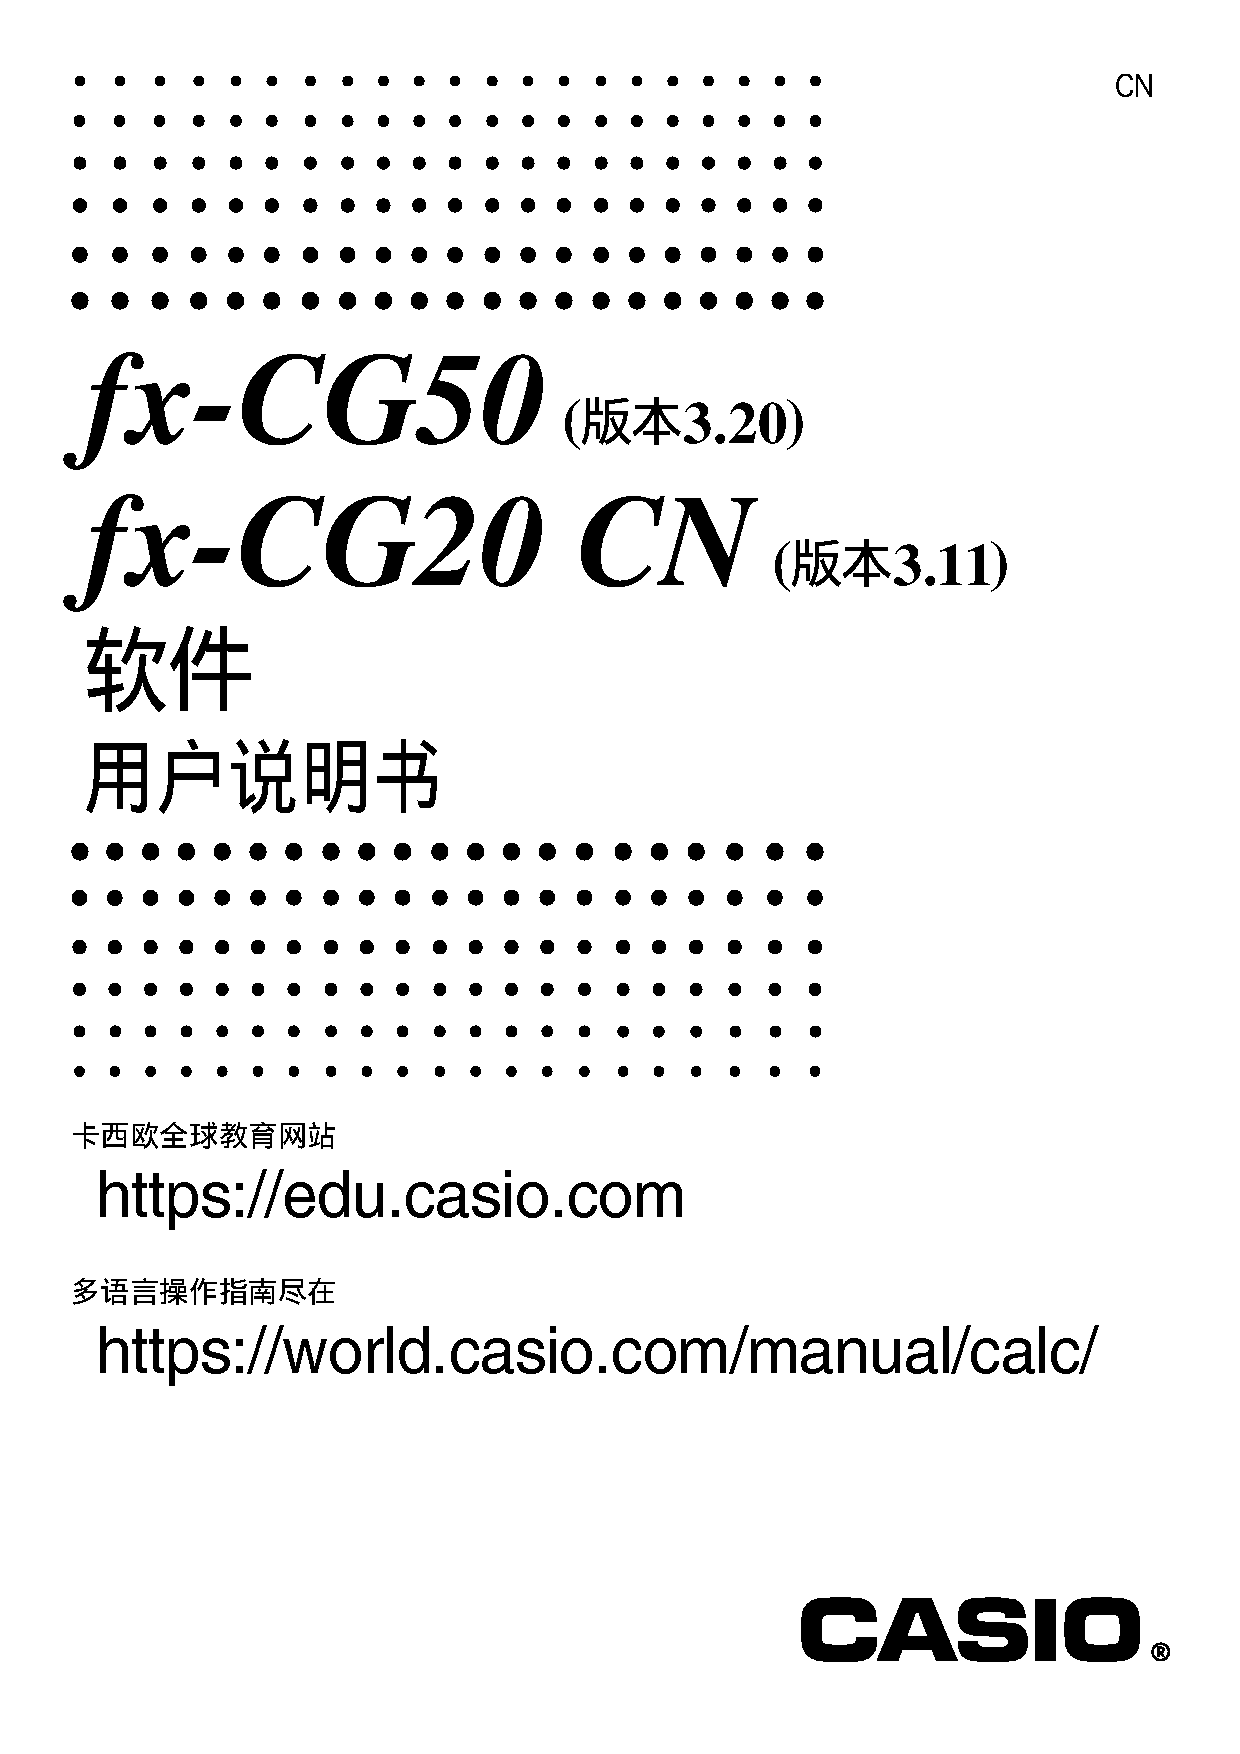 卡西欧 Casio FX-CG20 CN 软件3.20/3.11版 使用说明书 封面